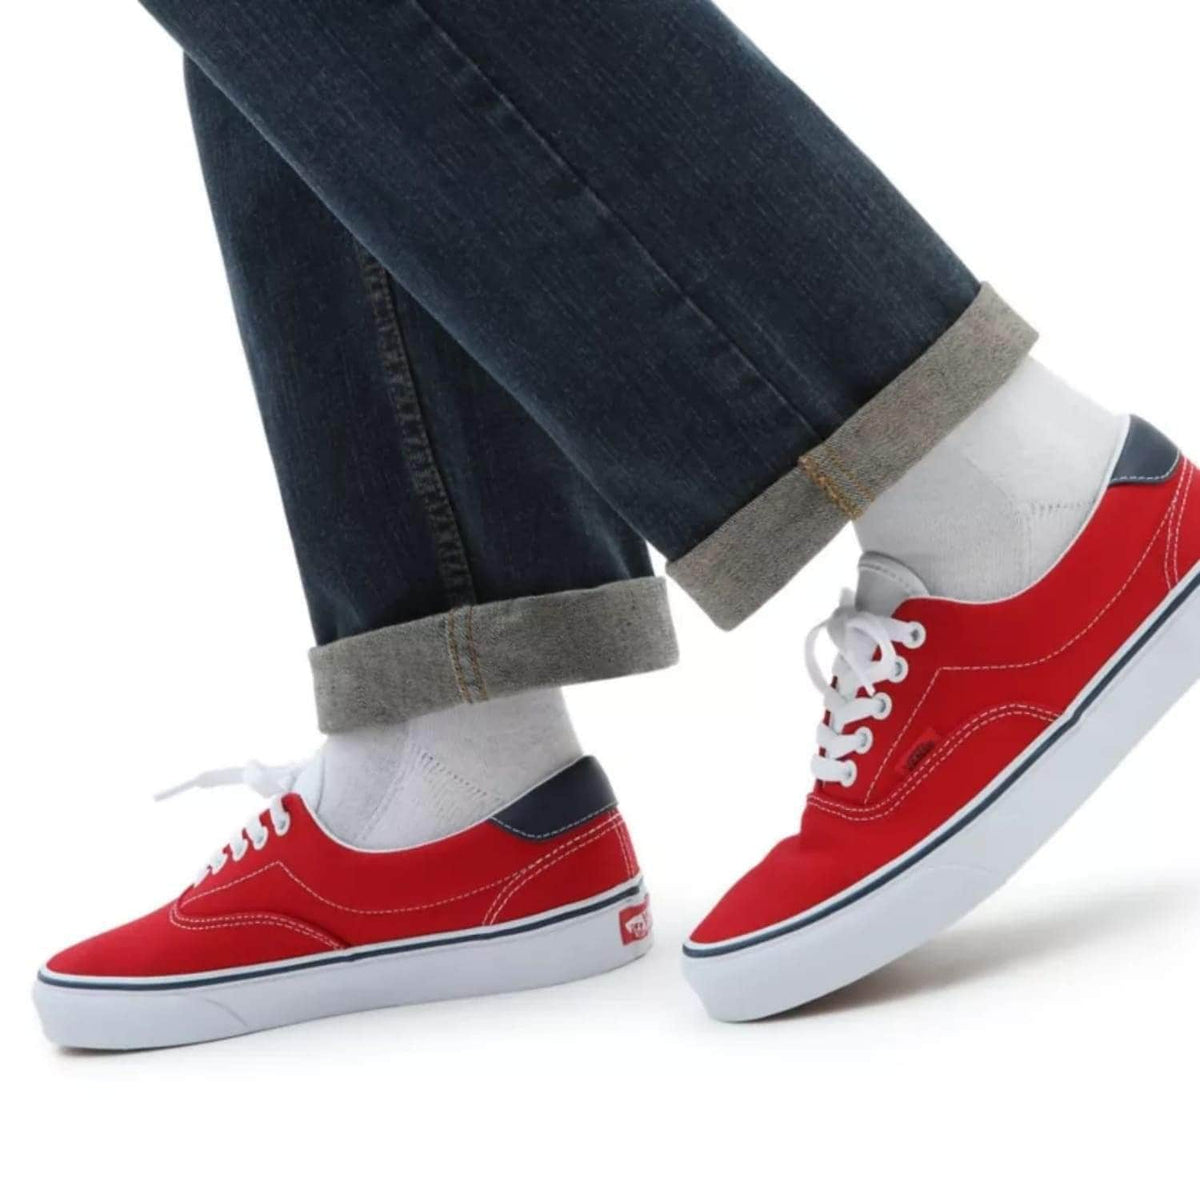 Vans C&amp;L Era 59 Shoes - Red/True White - Mens Skate Shoes by Vans